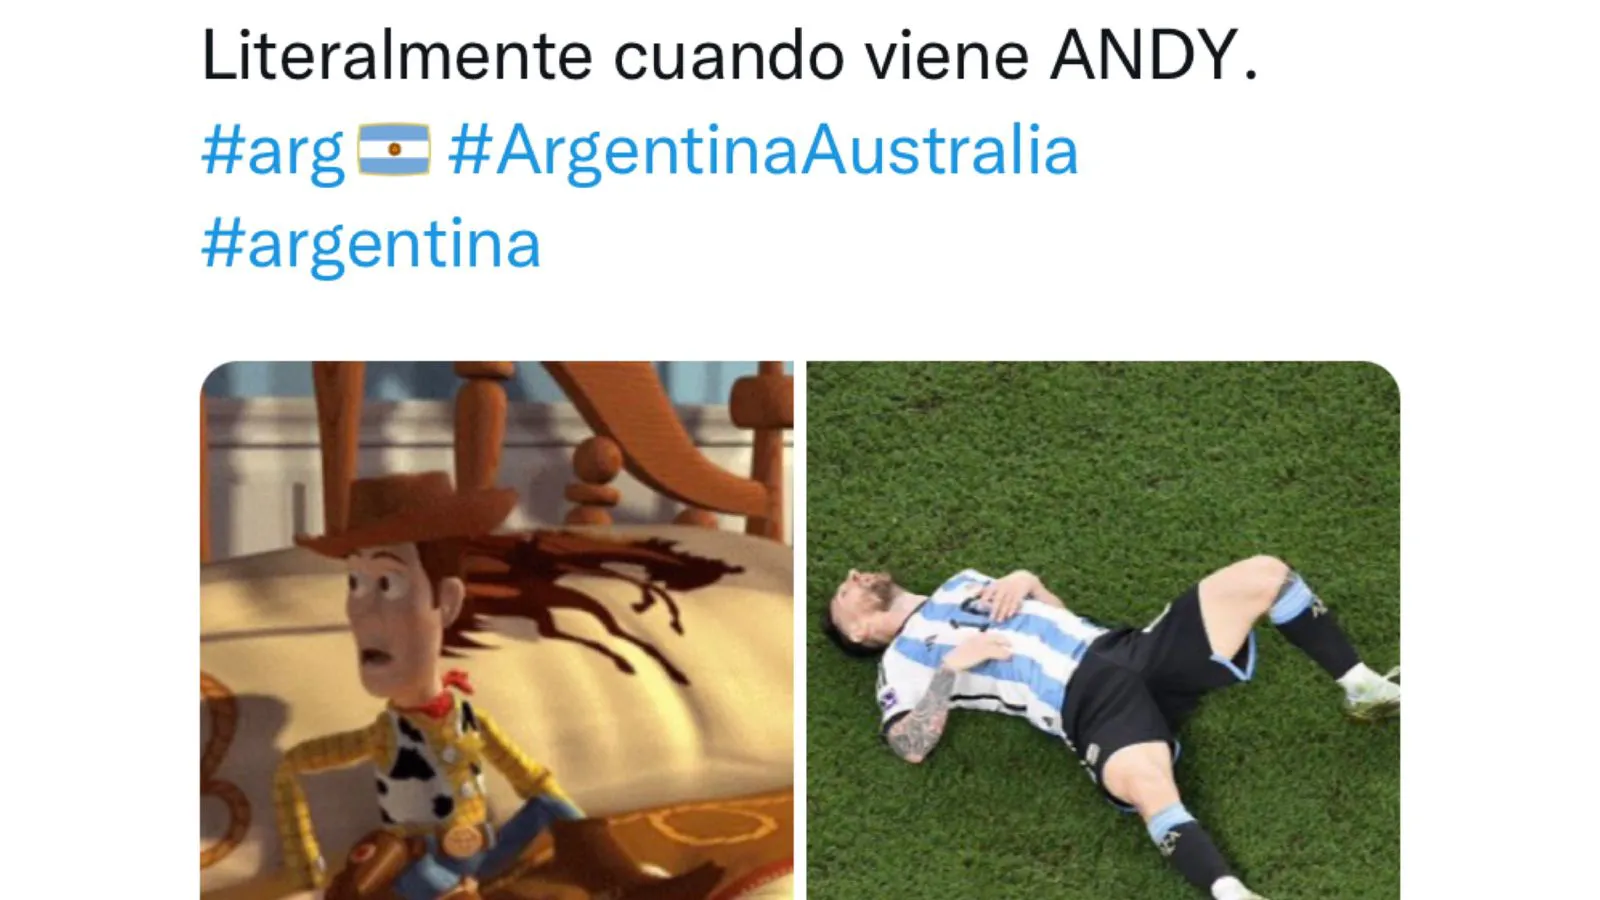 La Selección Argentina eliminó a Australia de la Copa del Mundo.